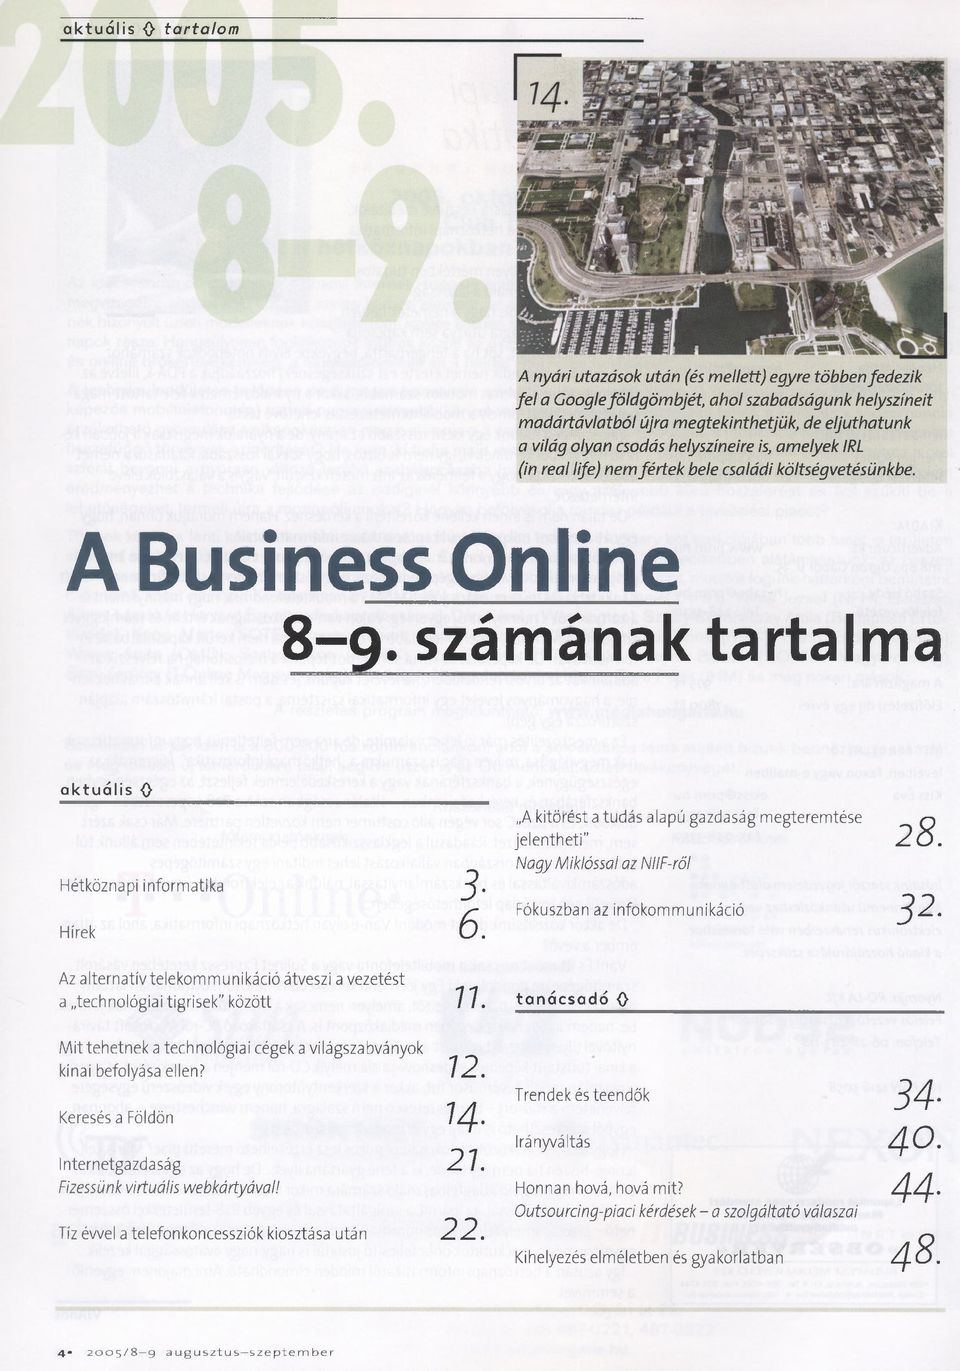 k ö ltsé g v e té sü n k b e. A Business Online 8-9. számának tartaima a k tu á lis 0 Hétköznapi informatika 3 - Hírek 6.